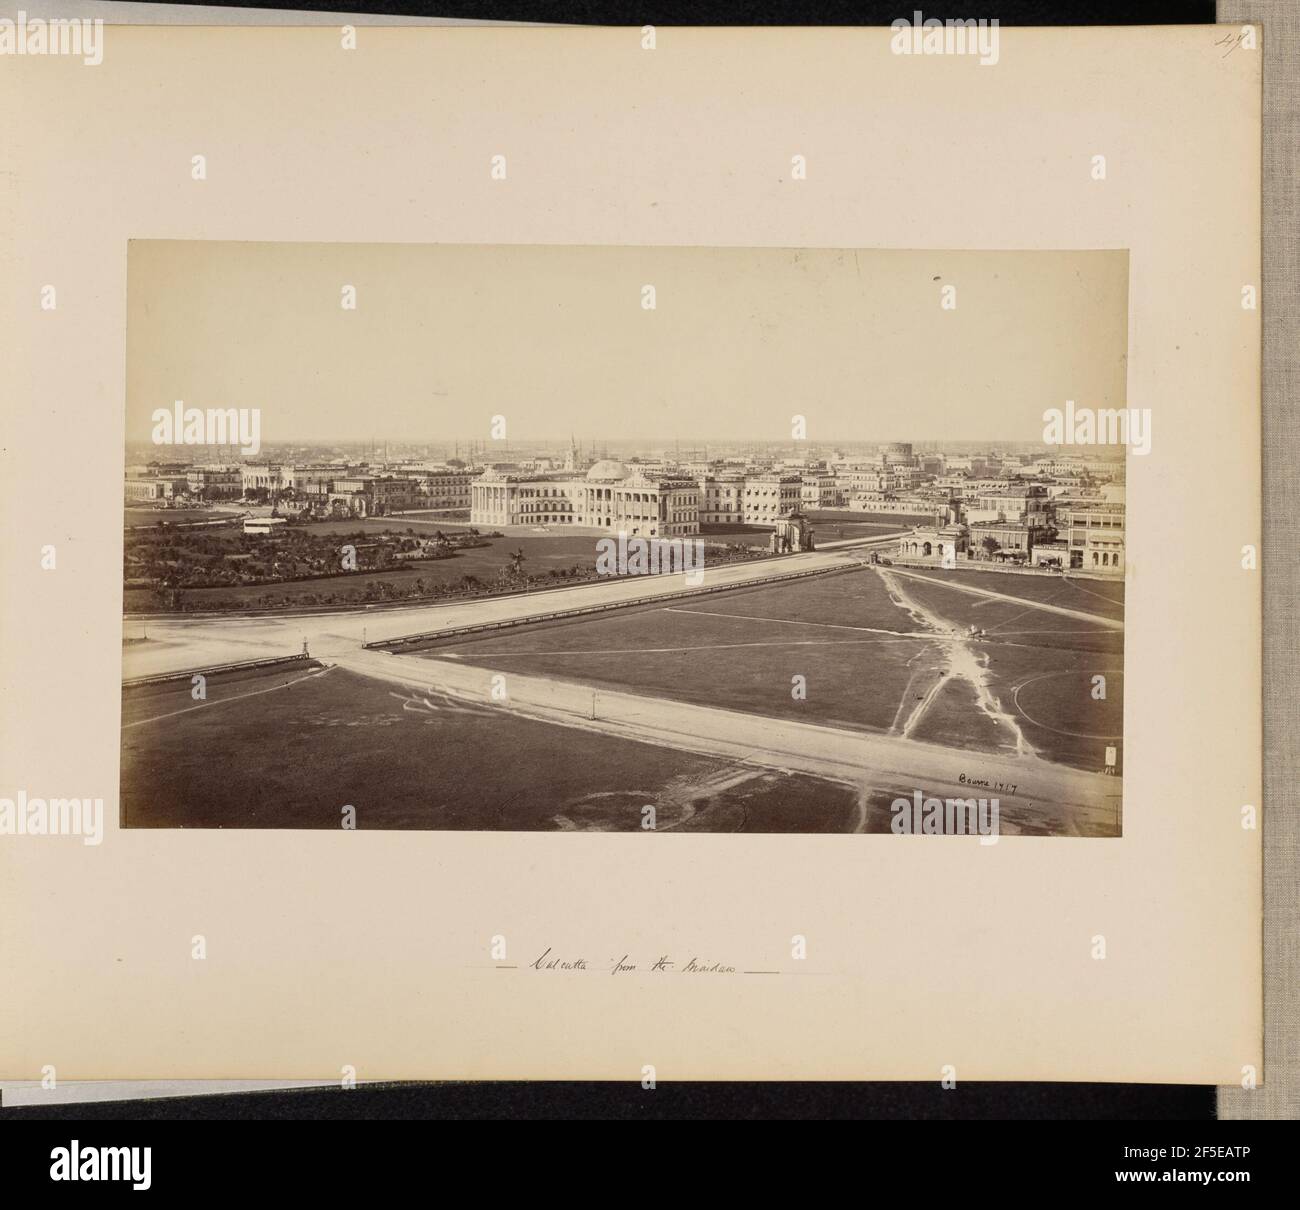 Vue panoramique de Calcutta, depuis le monument Ochterlony. P. III. Samuel Bourne (anglais, 1834 - 1912) Banque D'Images